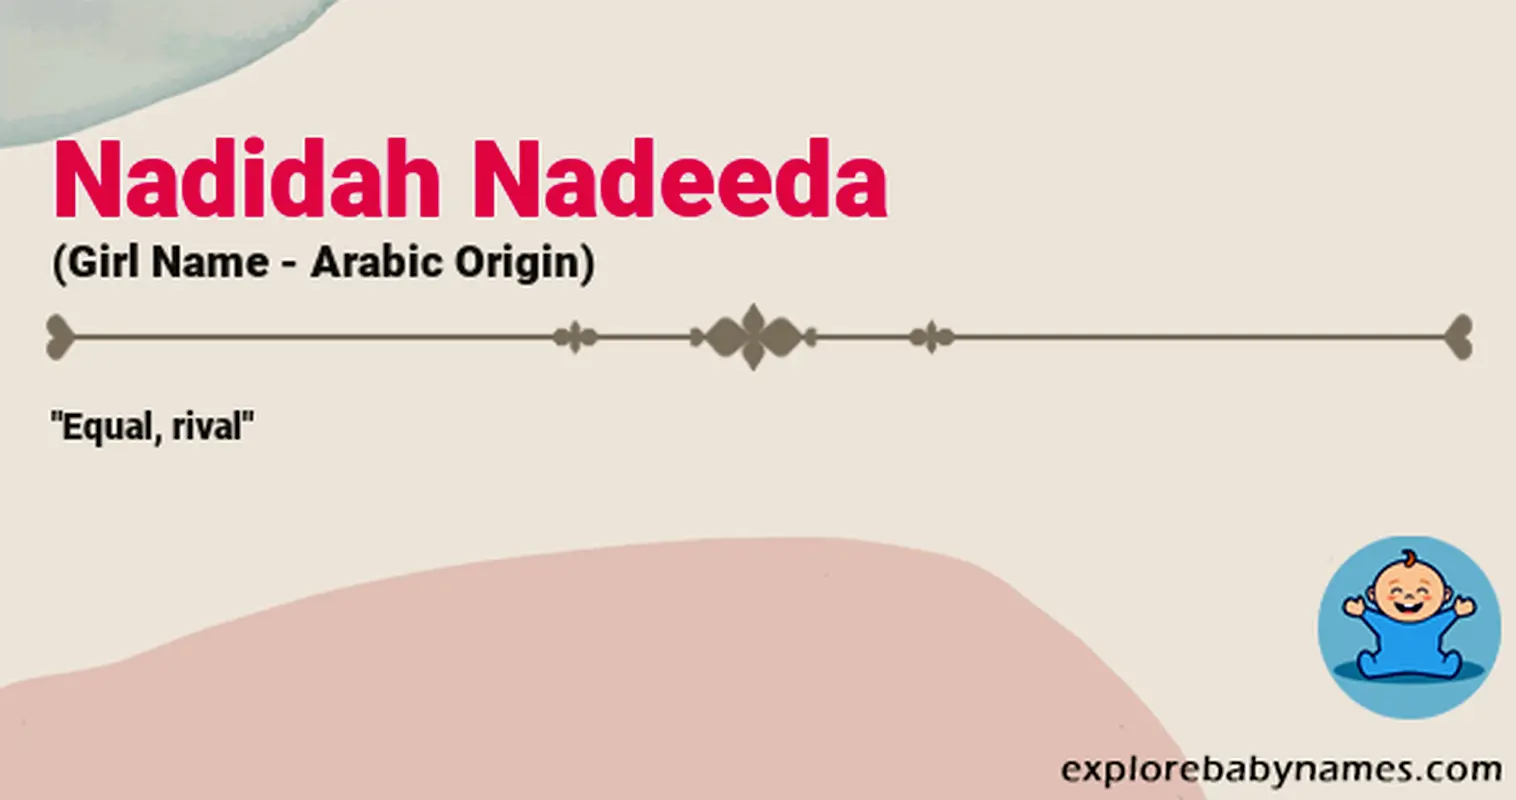 Meaning of Nadidah Nadeeda